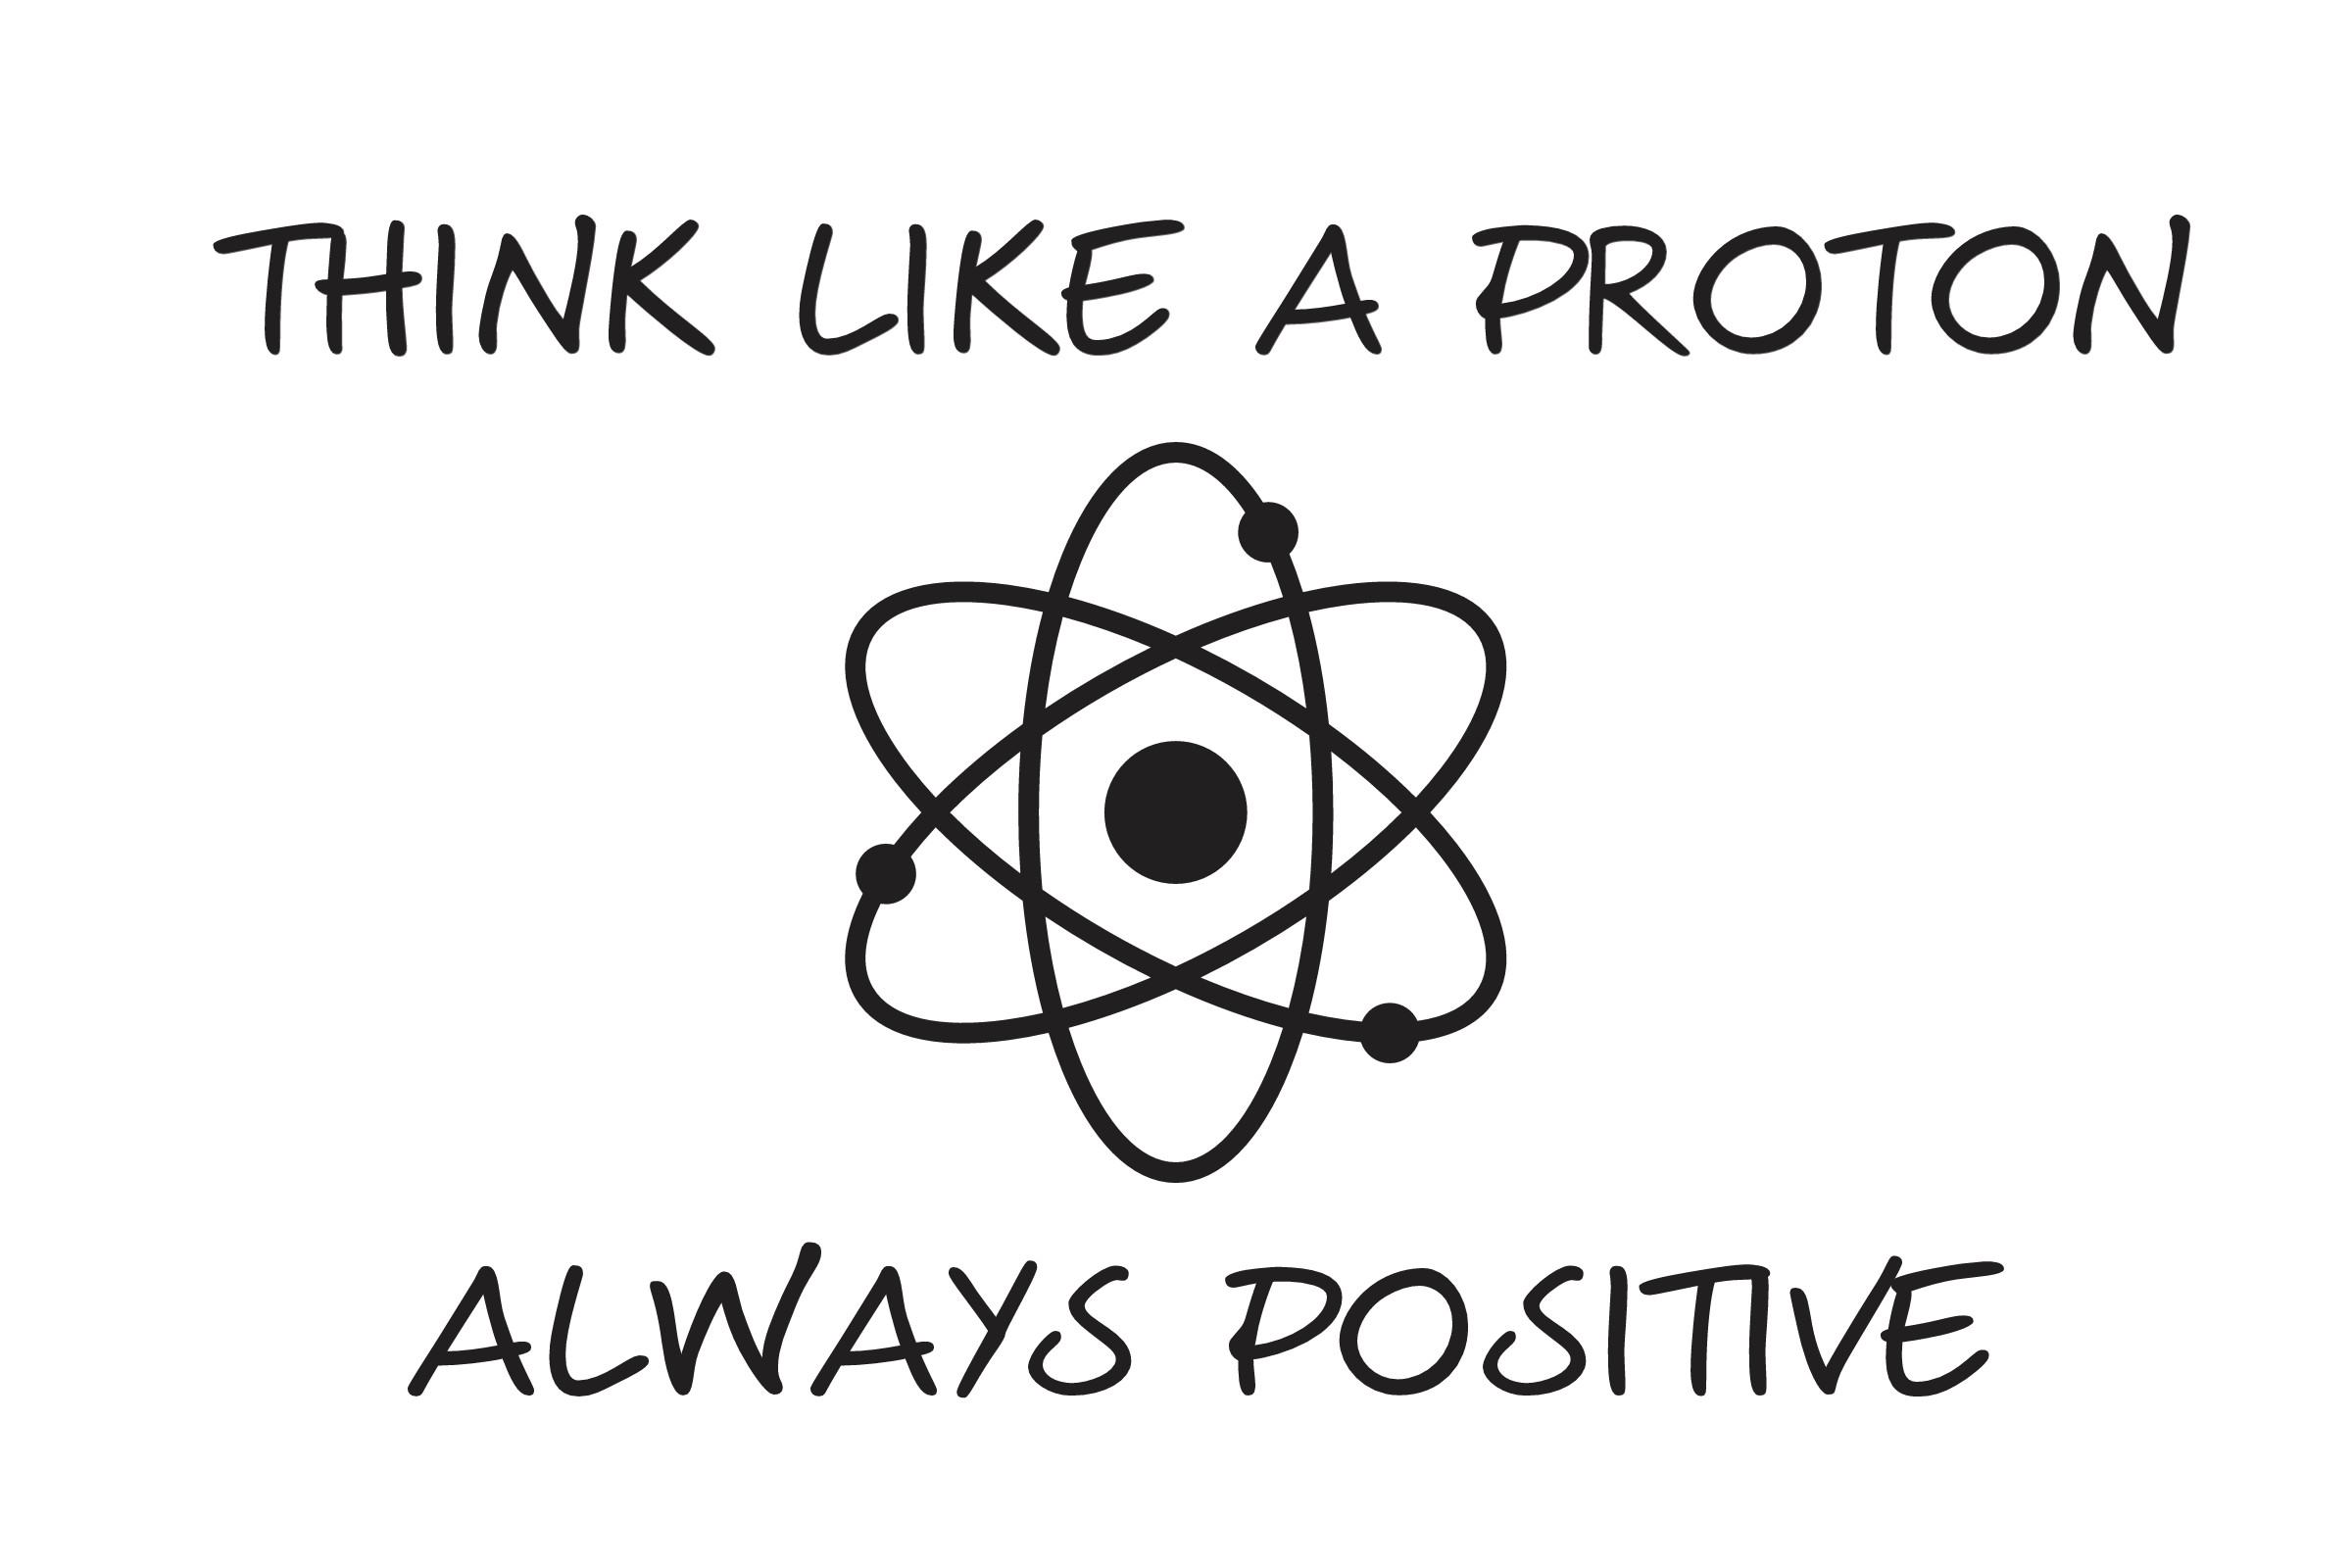 Bleiben Sie zuversichtlich in dieser herausfordernden Zeit und denken Sie positiv - wie ein Proton!